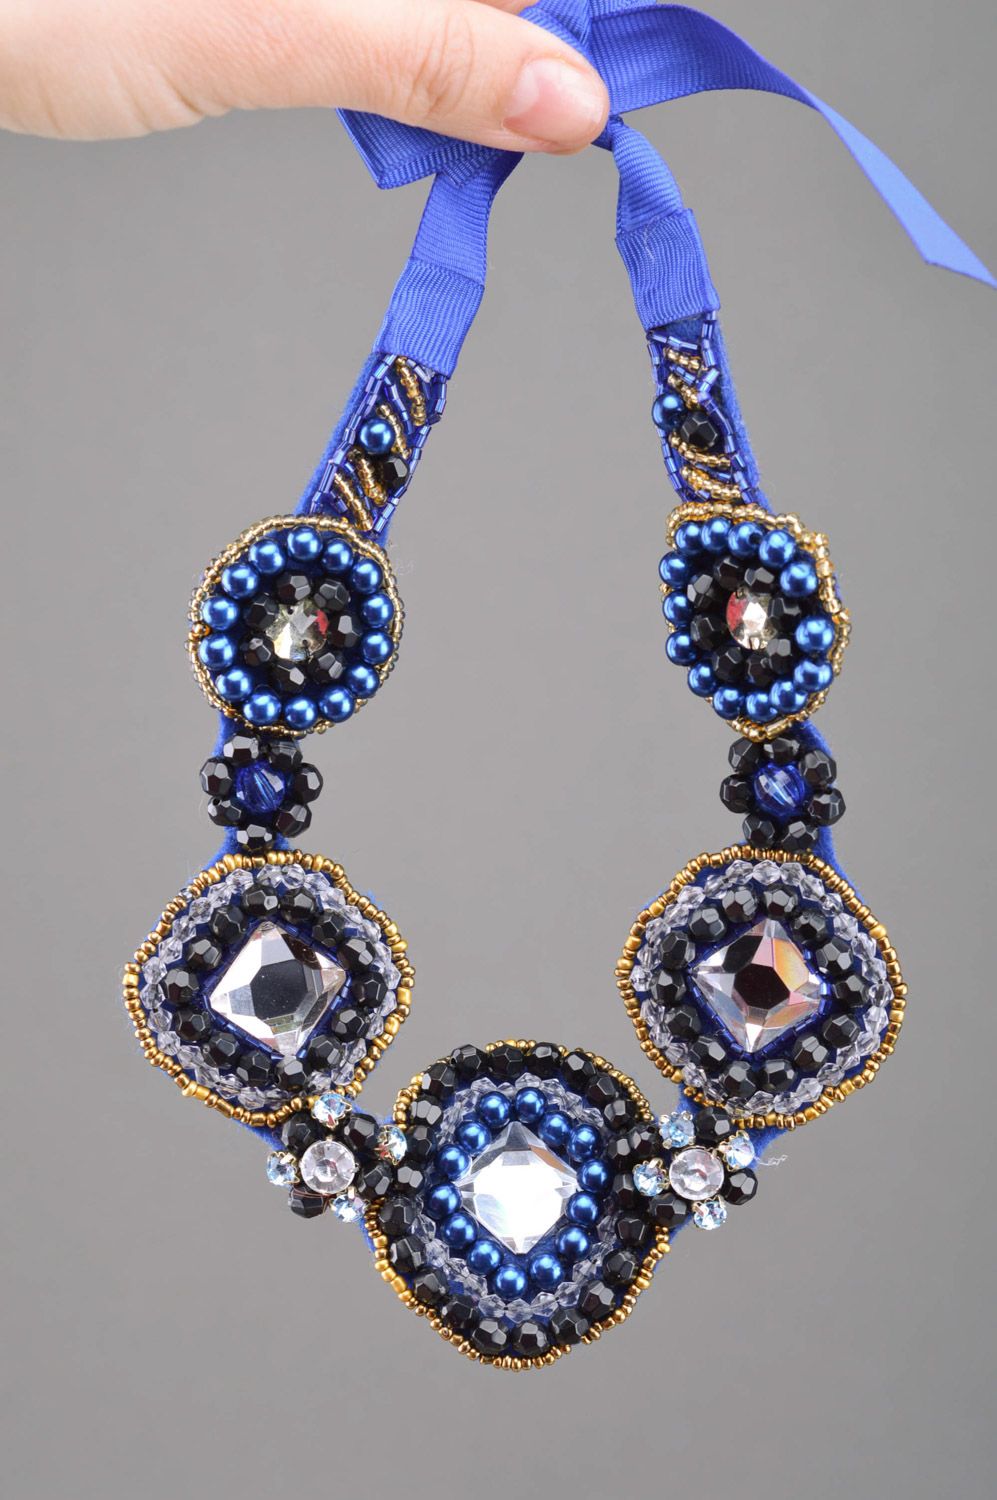 Grand collier bleu feutre perles fantaisie fait main Mille et Une Nuits photo 3